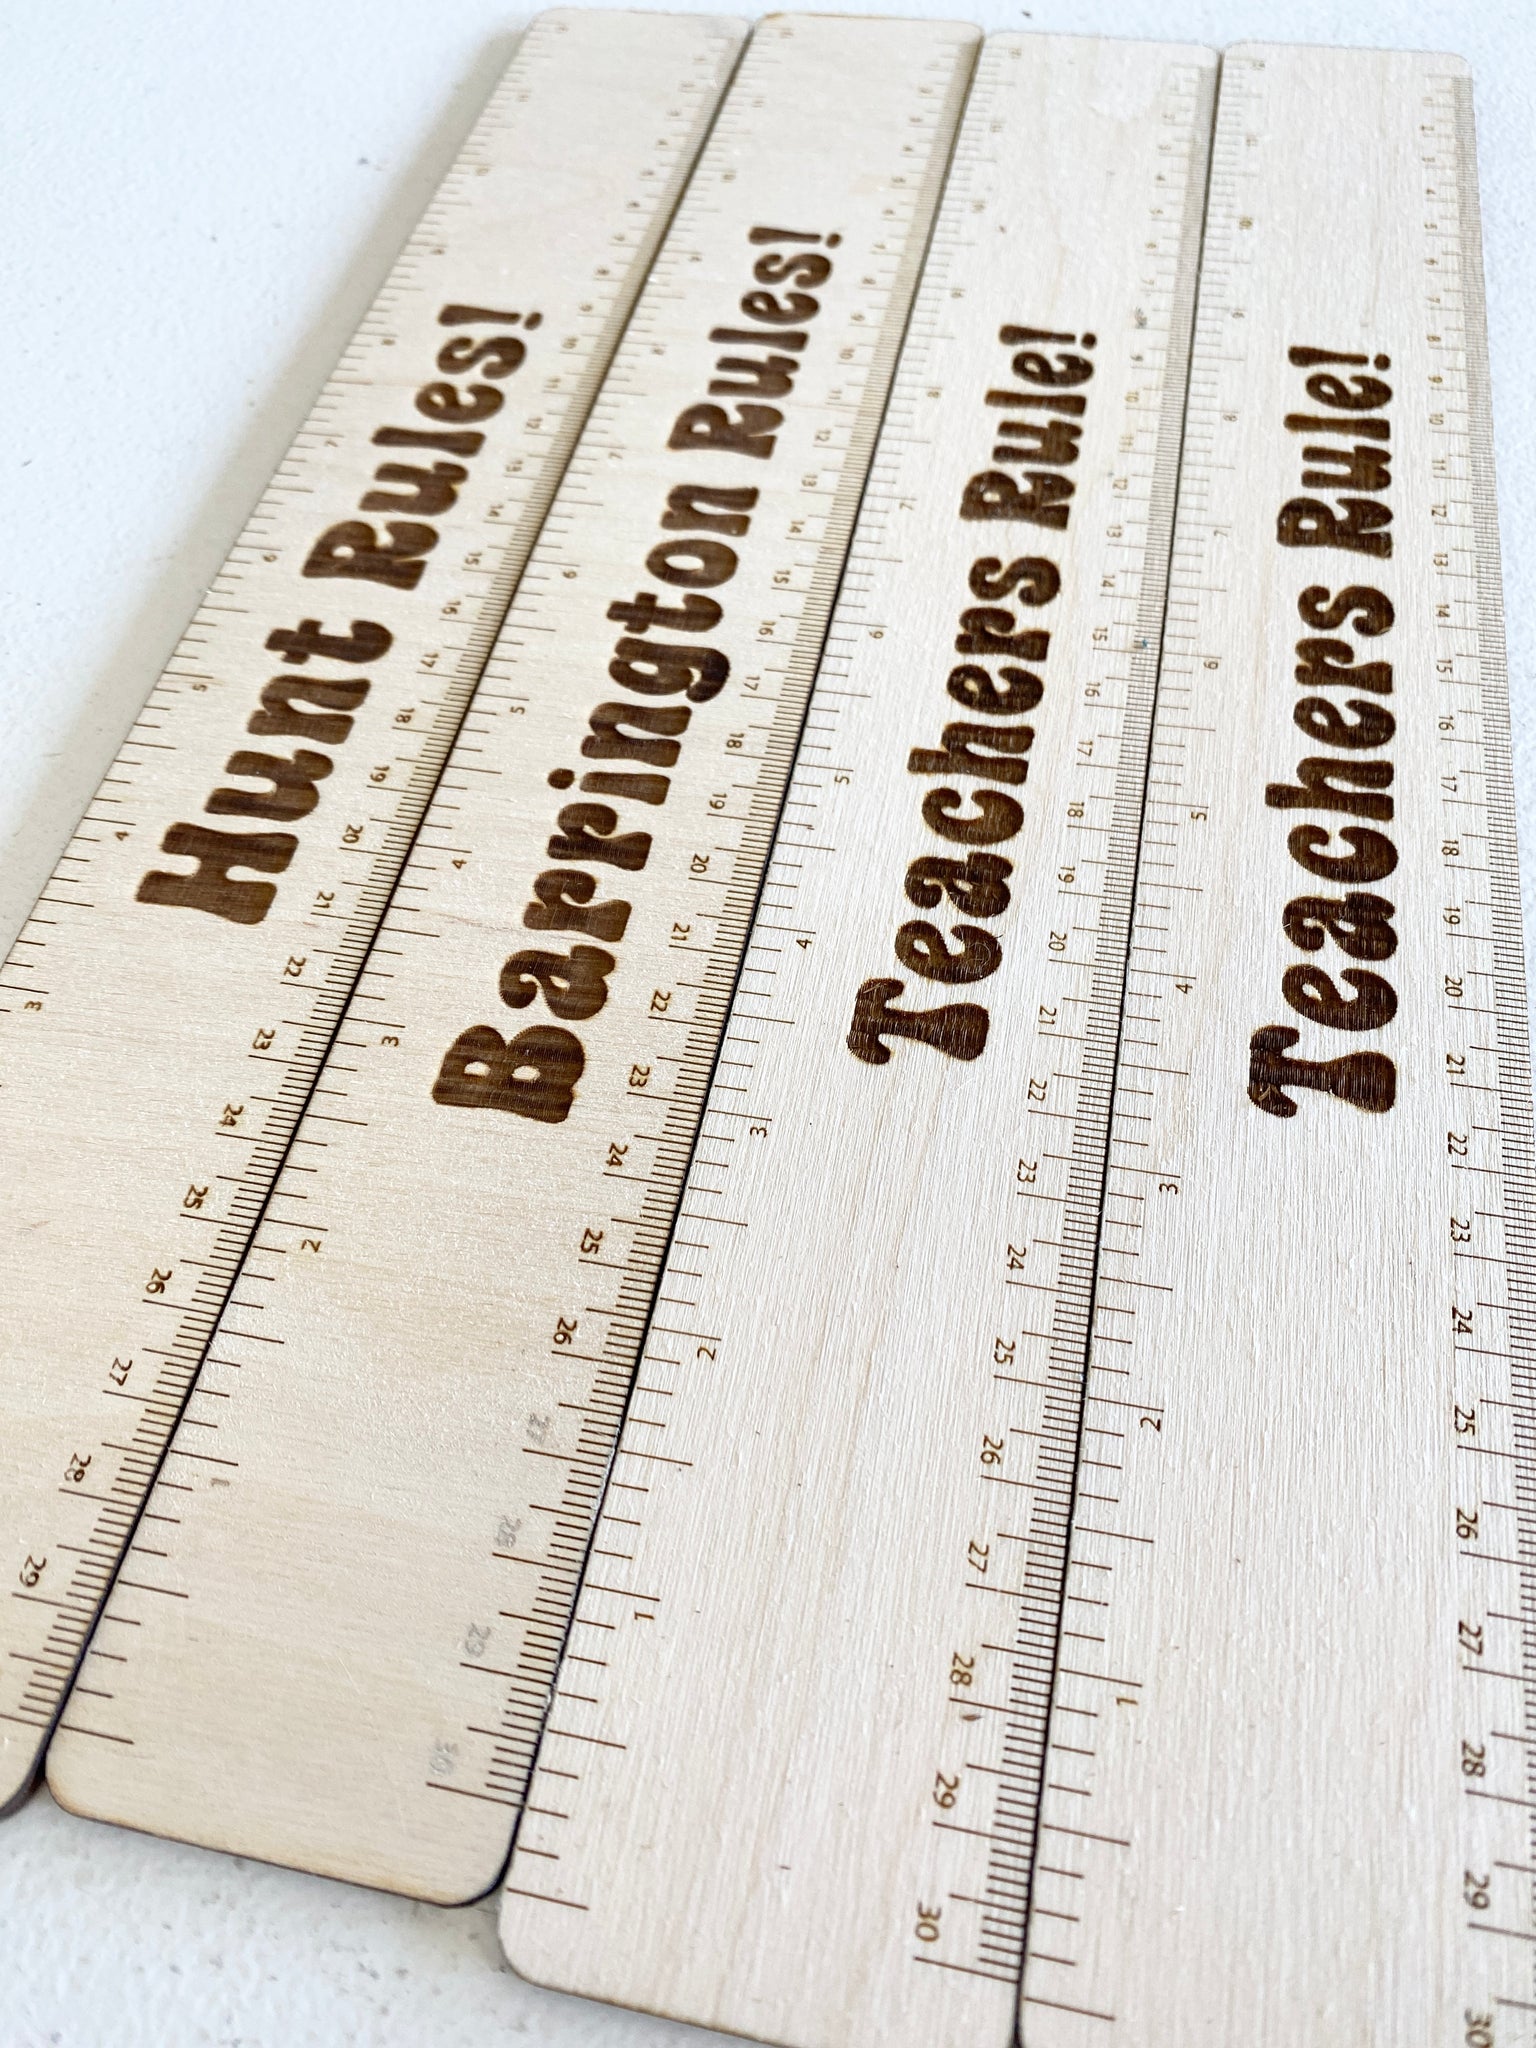 How to make a wood ruler / Laser engraver 